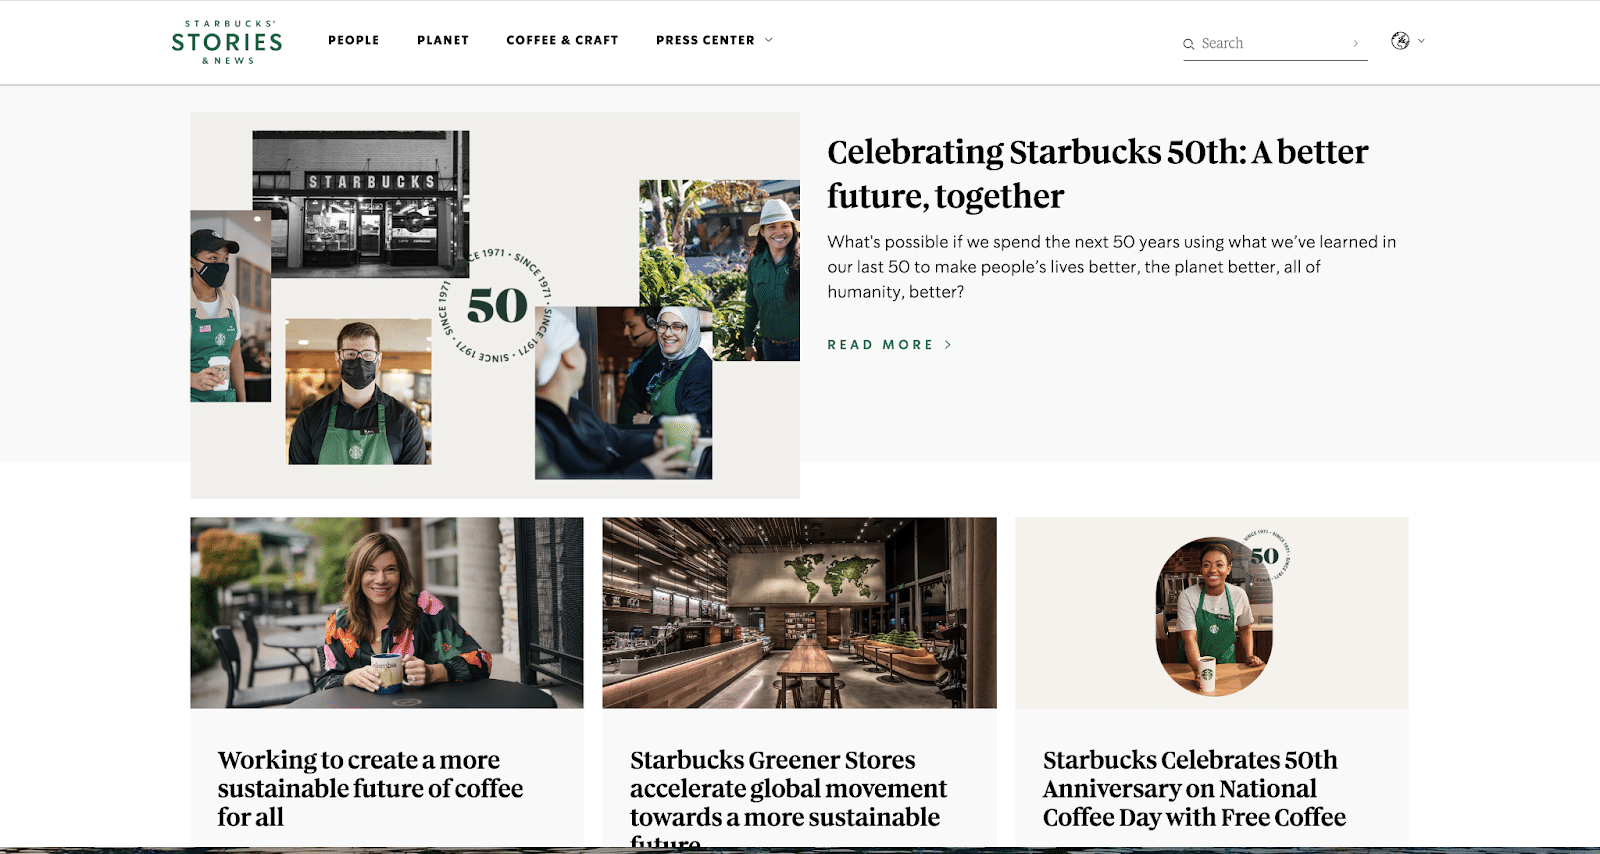 Le blog Starbucks Stories